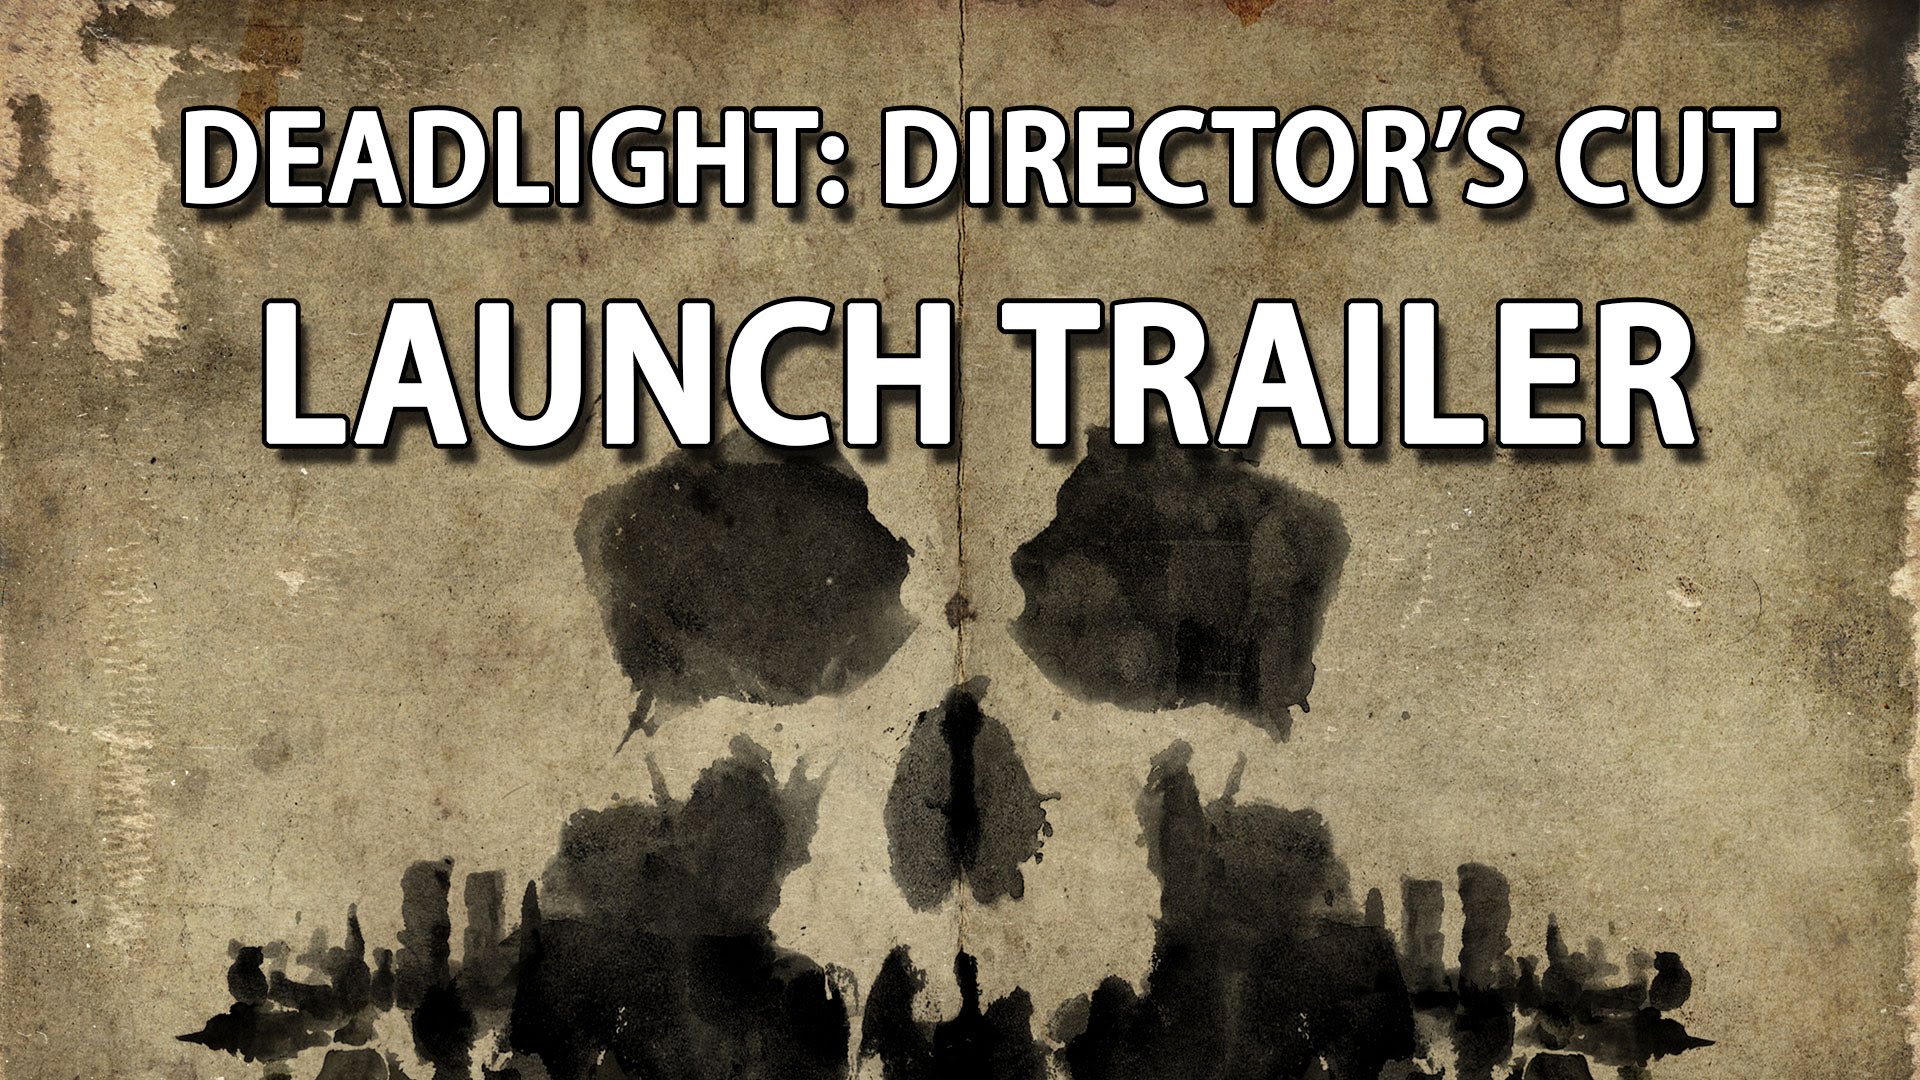 Deadlight: Director's Cut Launch Trailer